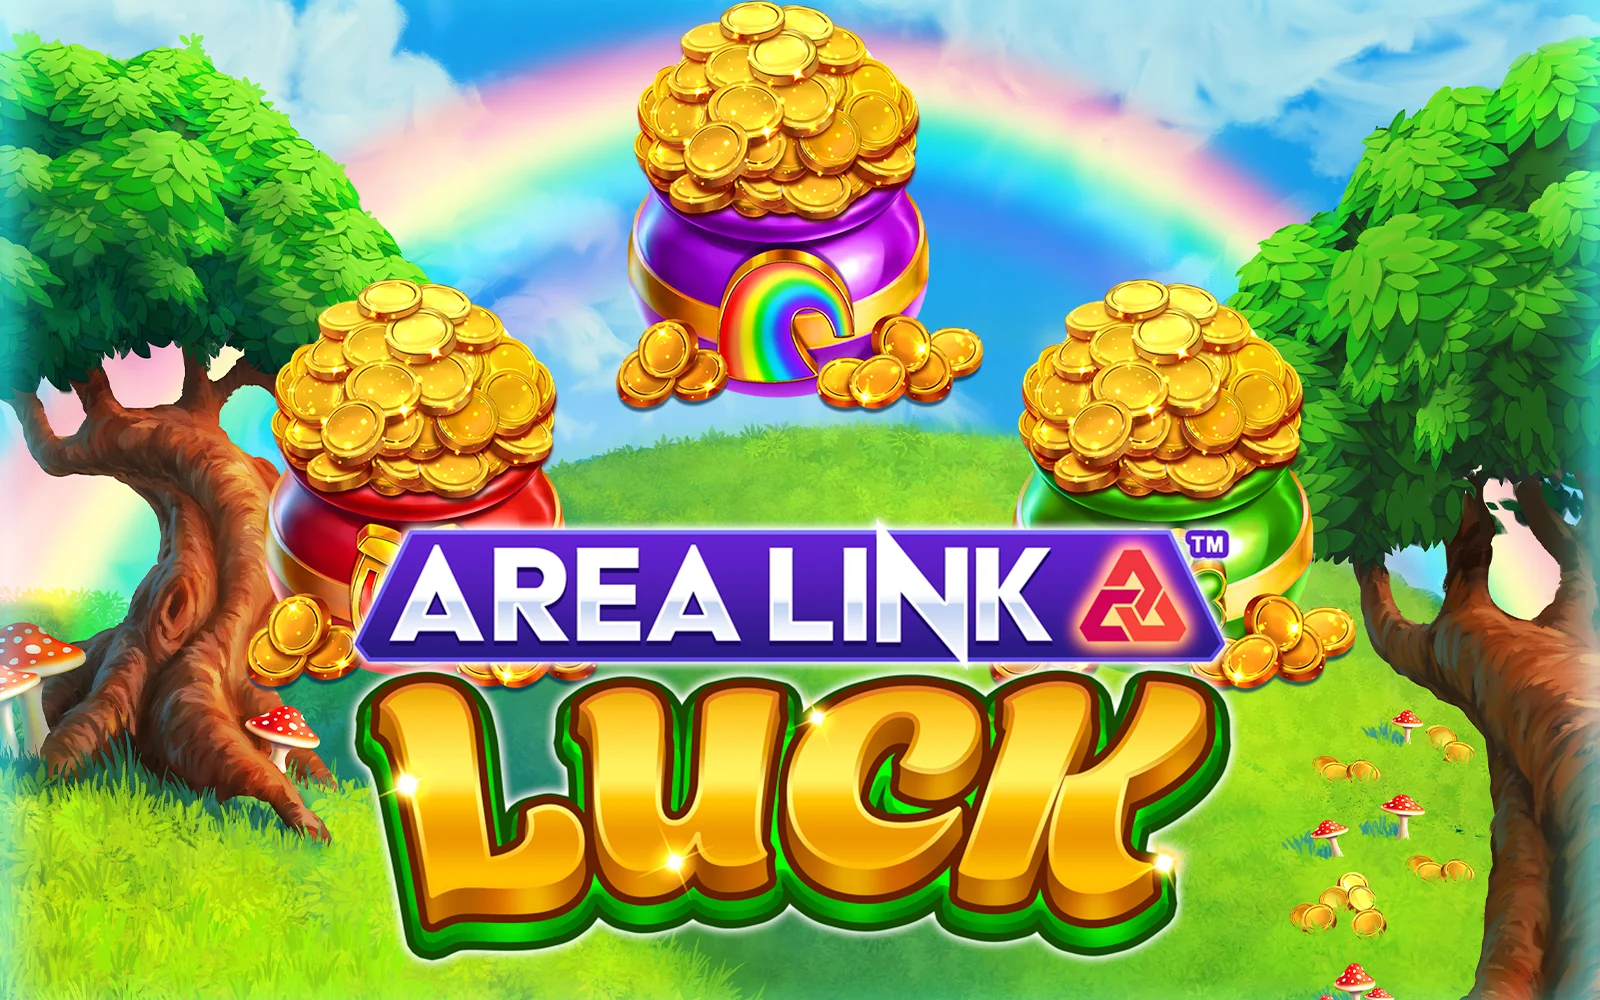 Speel Area Link™ Luck op Starcasino.be online casino